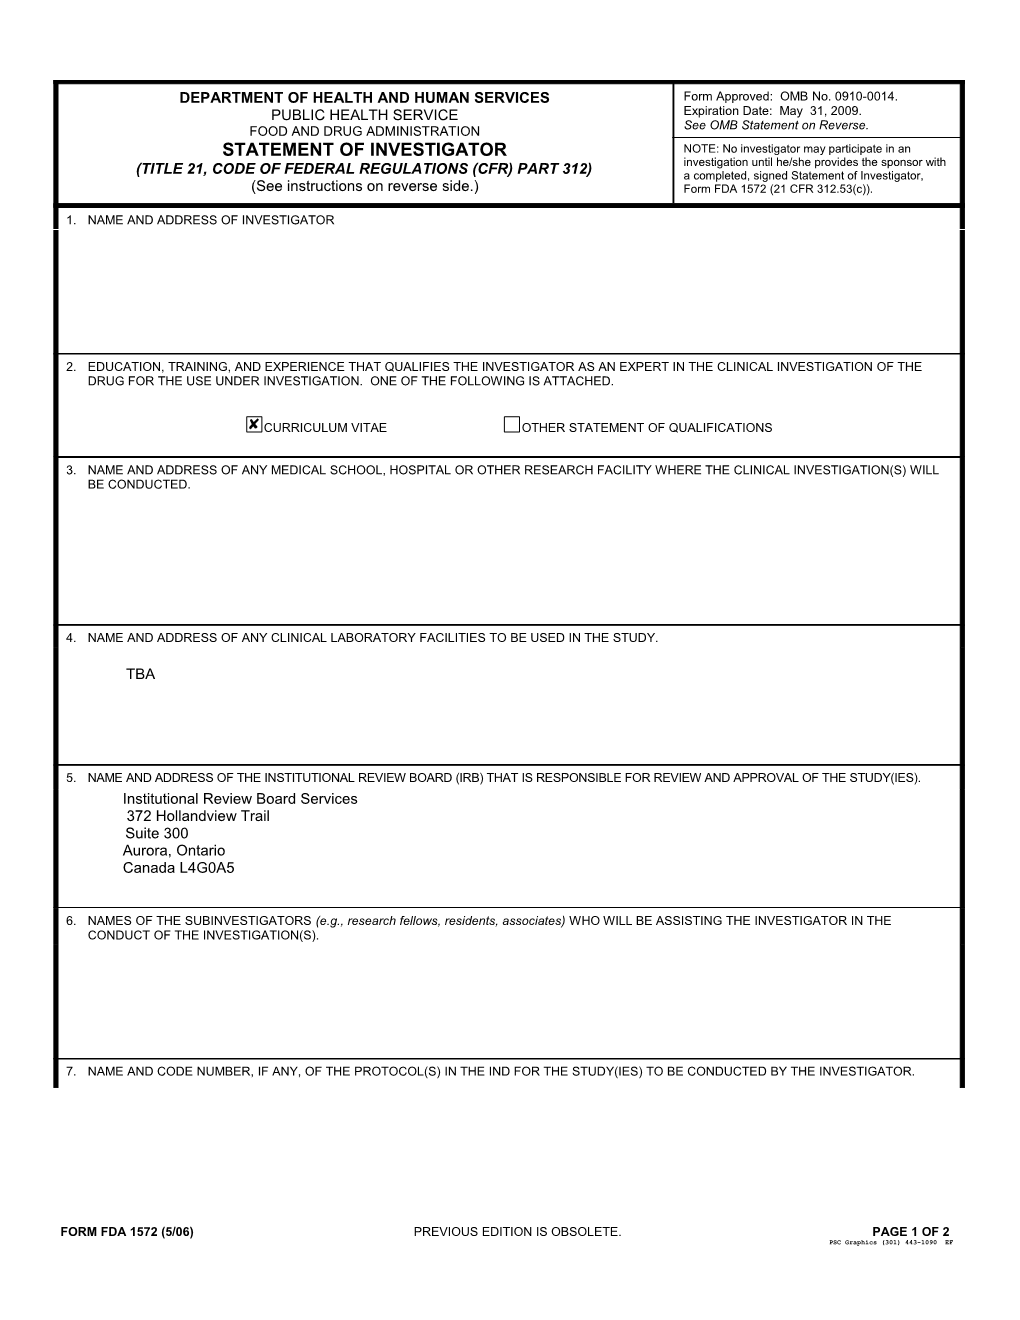 Form FDA 1572 - Statement of Investigator